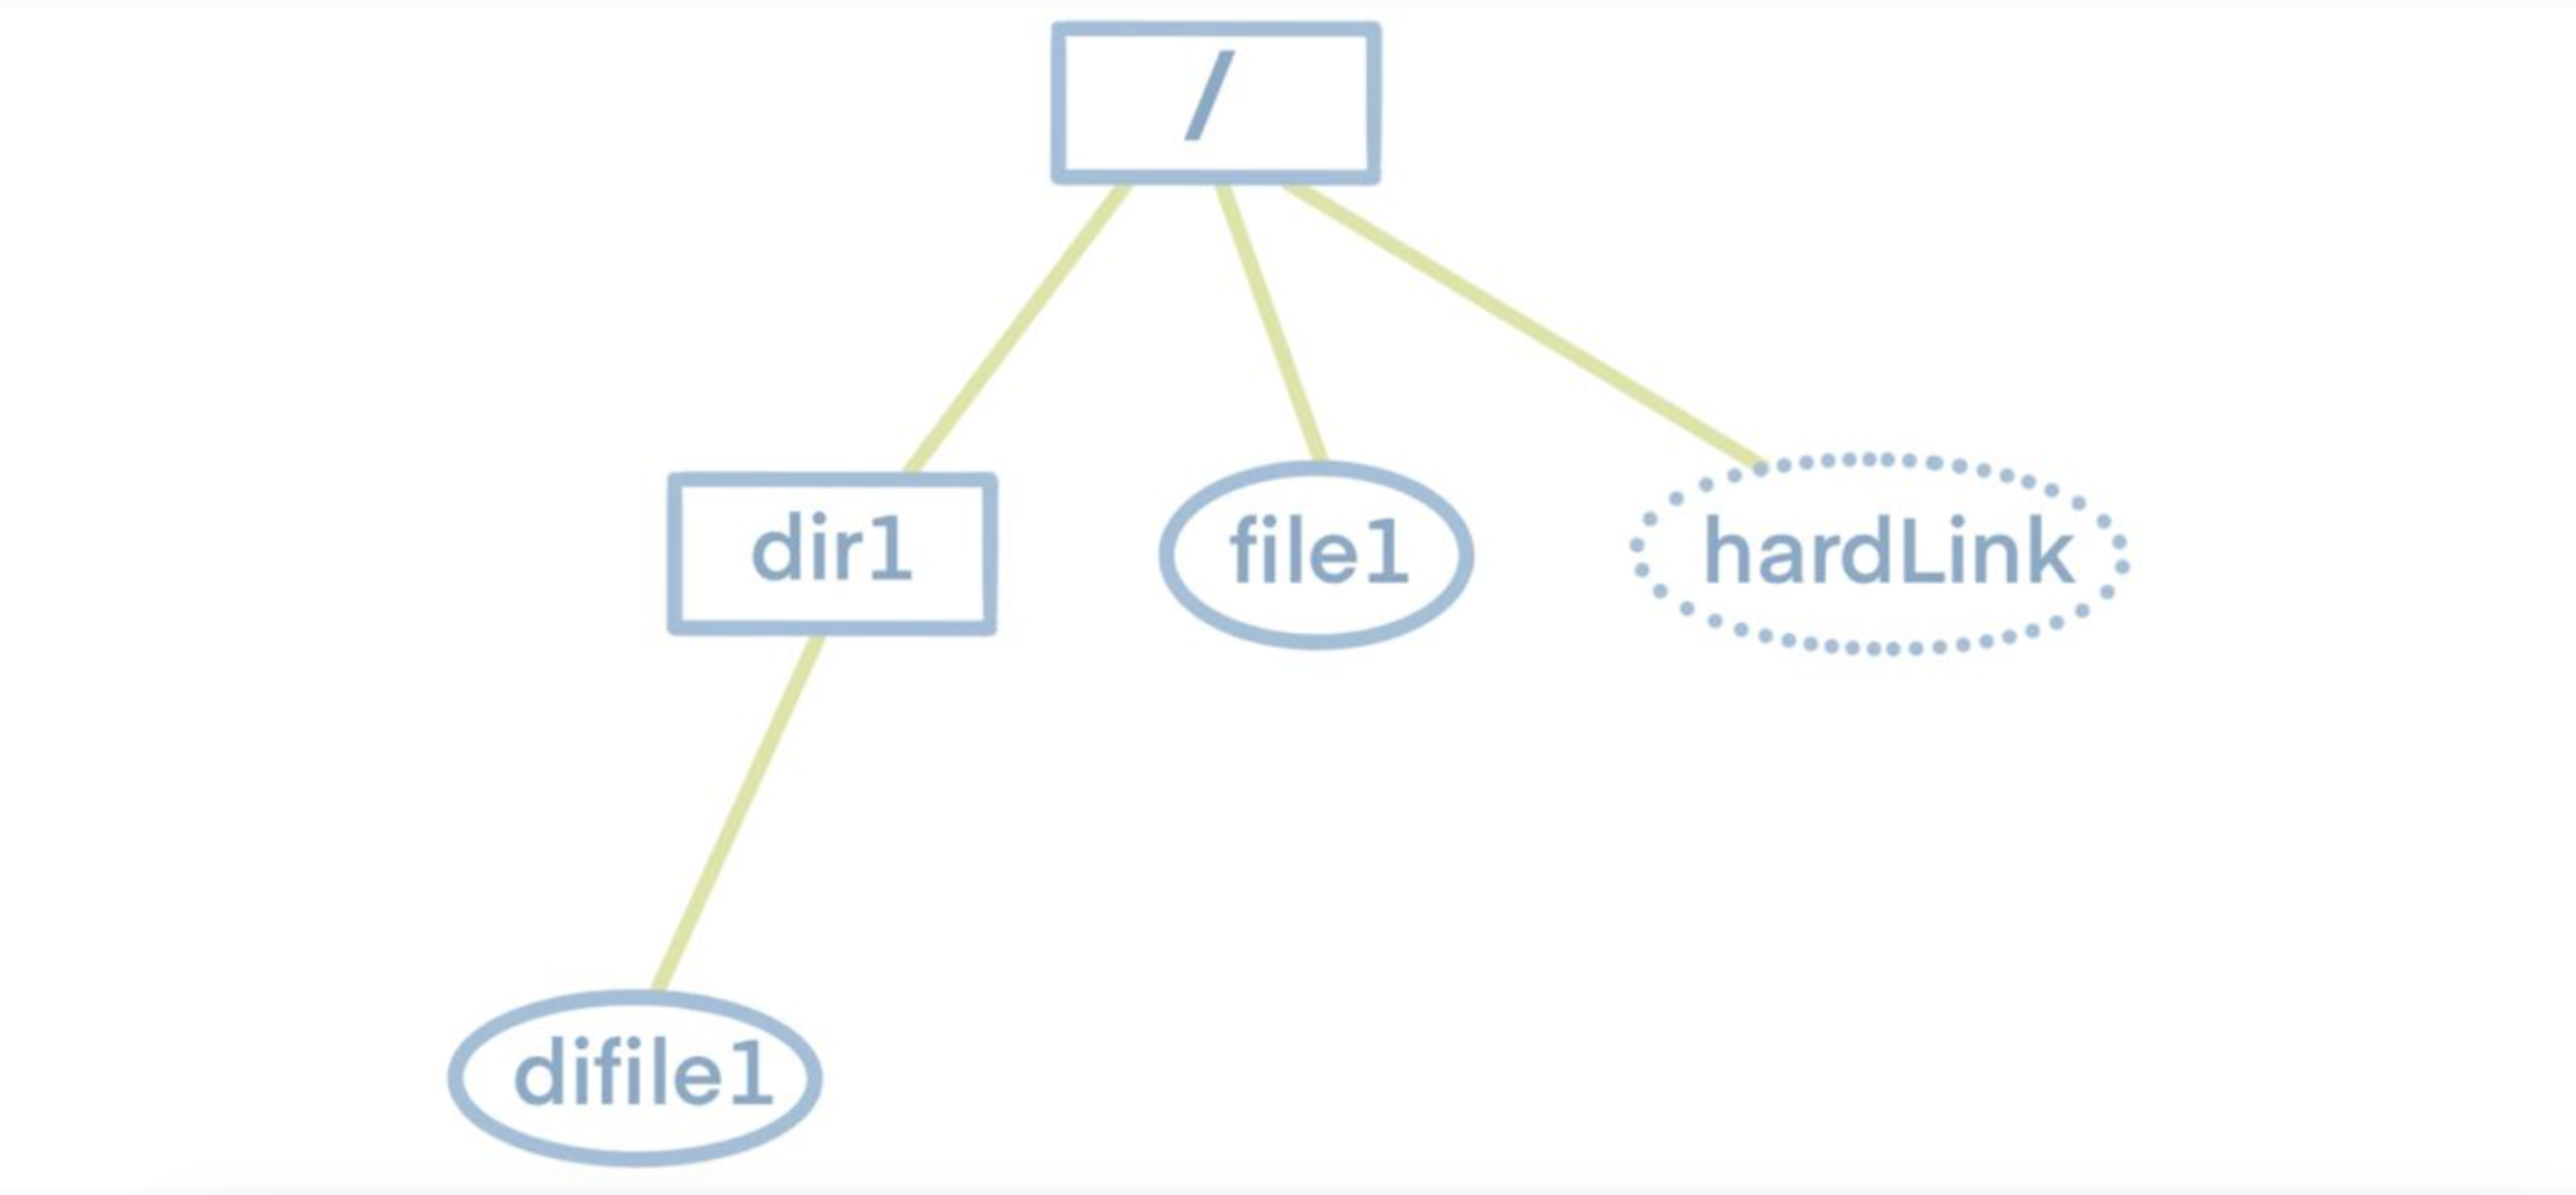 Struktura drzewa systemu plików